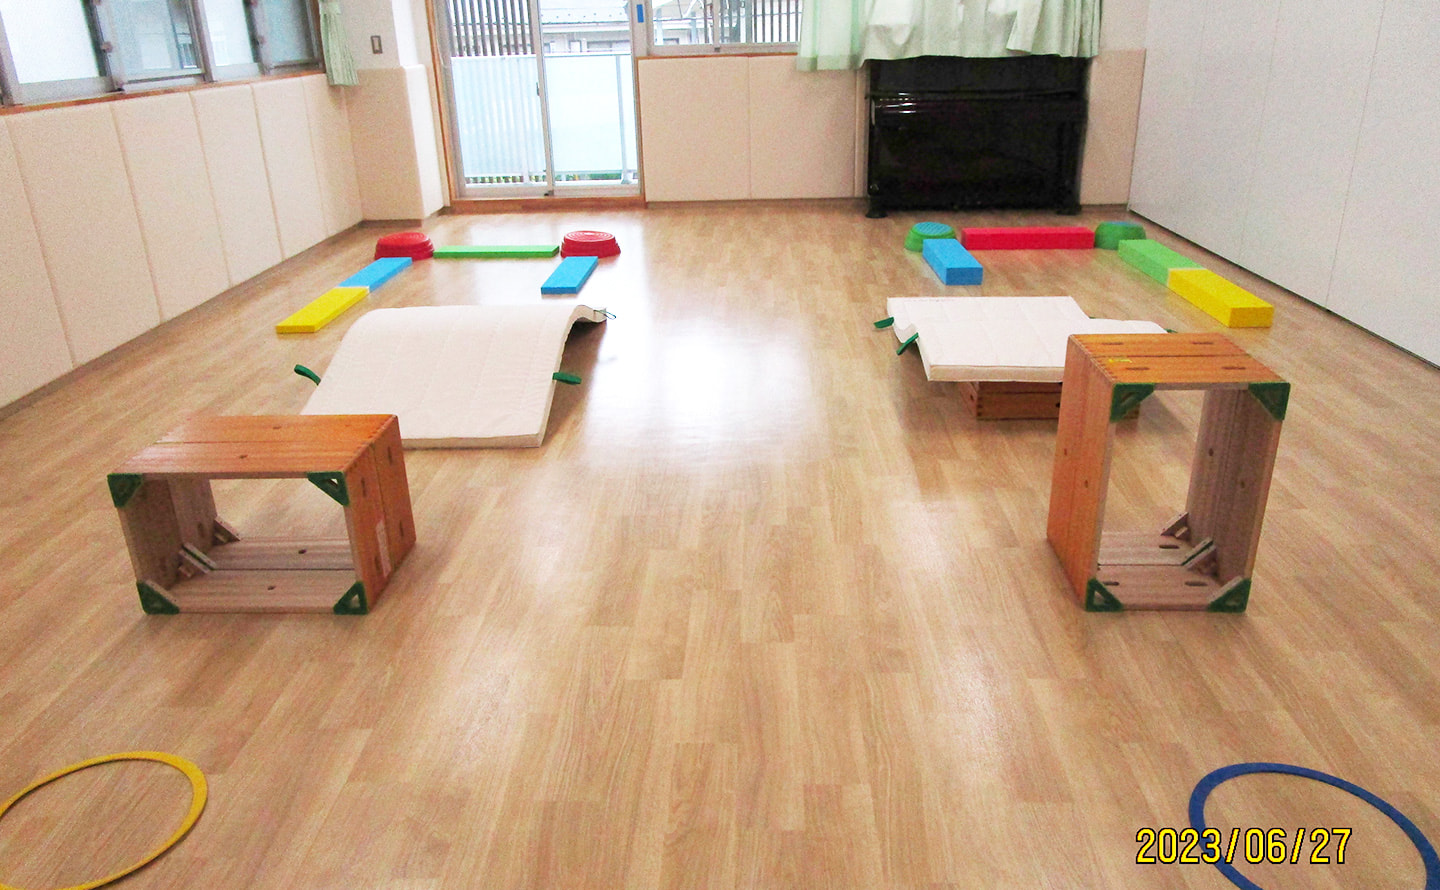 狛江市児童発達支援センターのイメージ画像